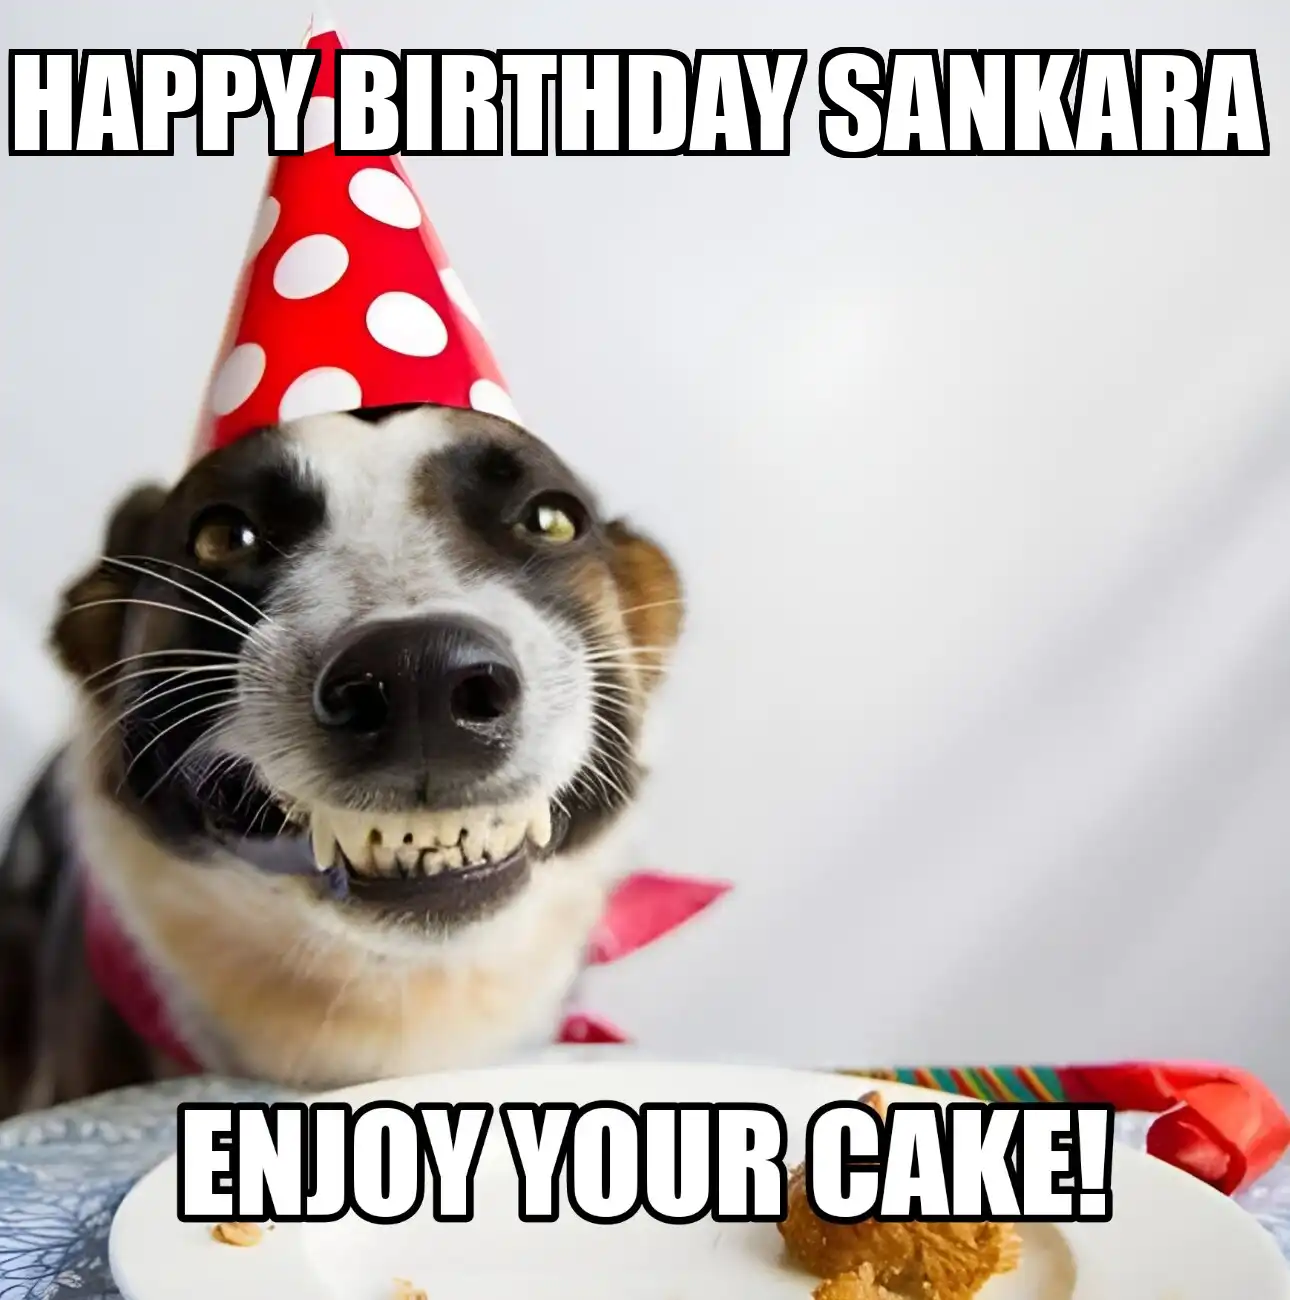 Happy Birthday Sankara Enjoy Your Cake Dog Meme